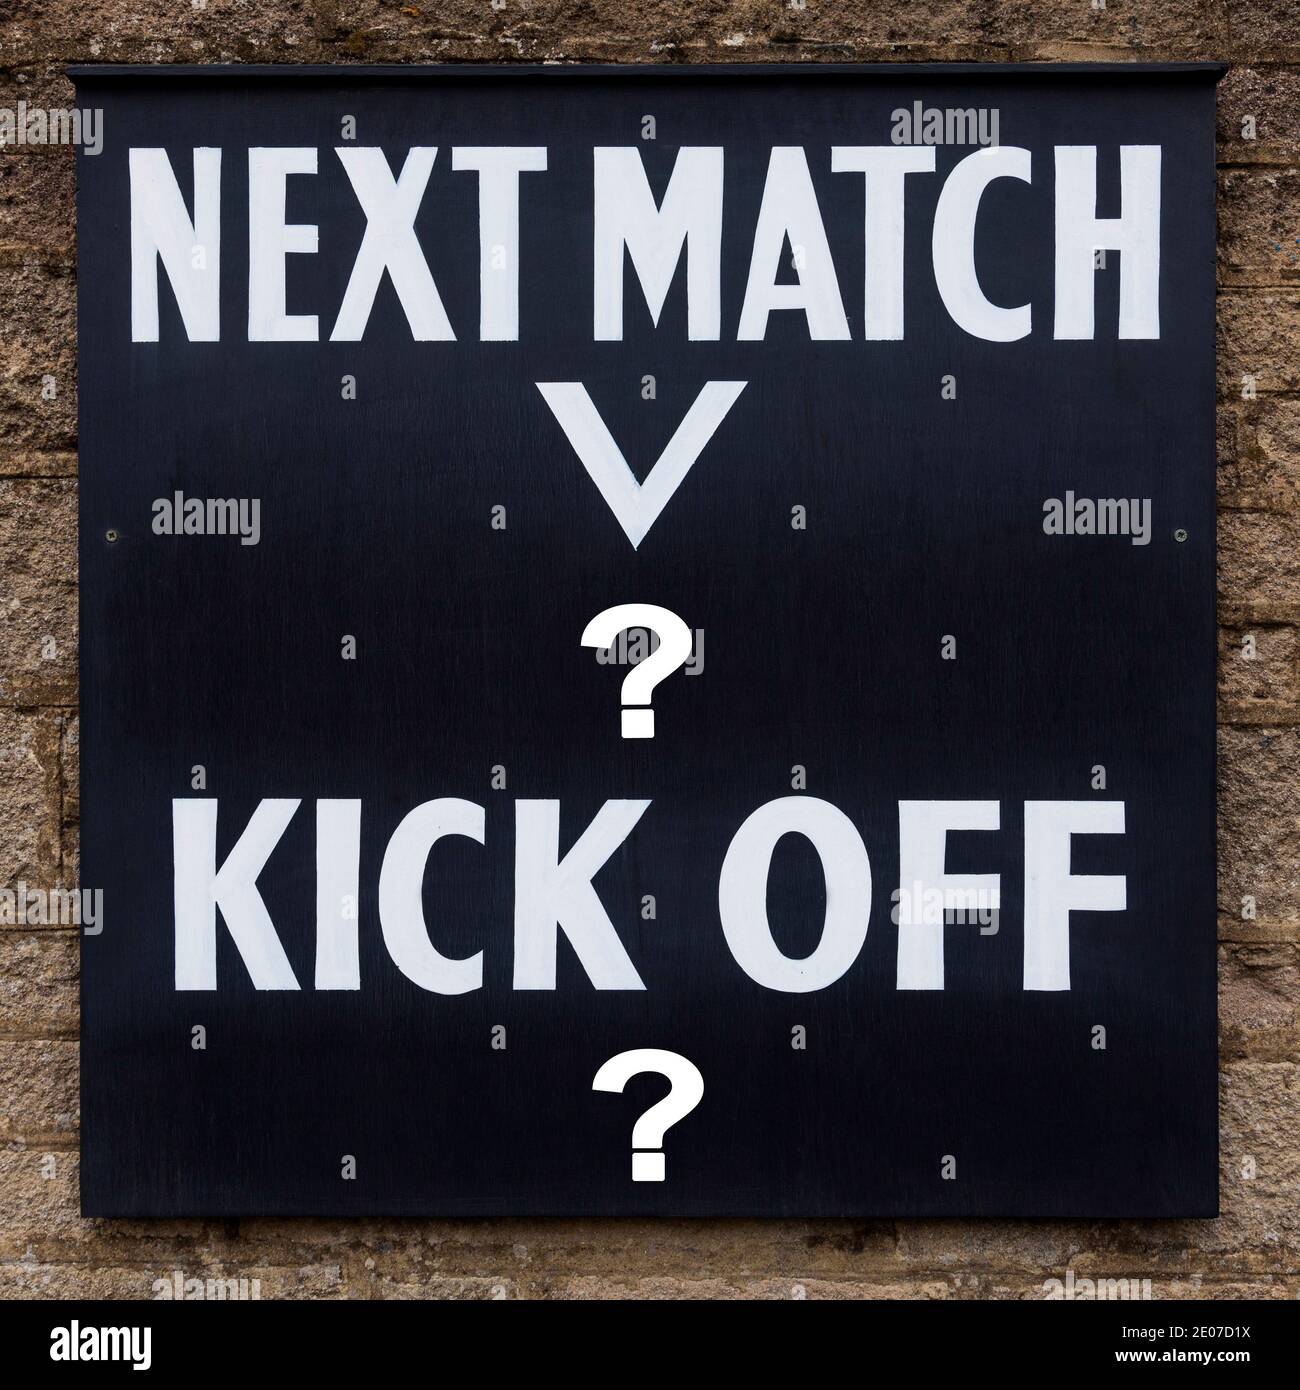 Un cartel del club de fútbol inglés. Foto de stock